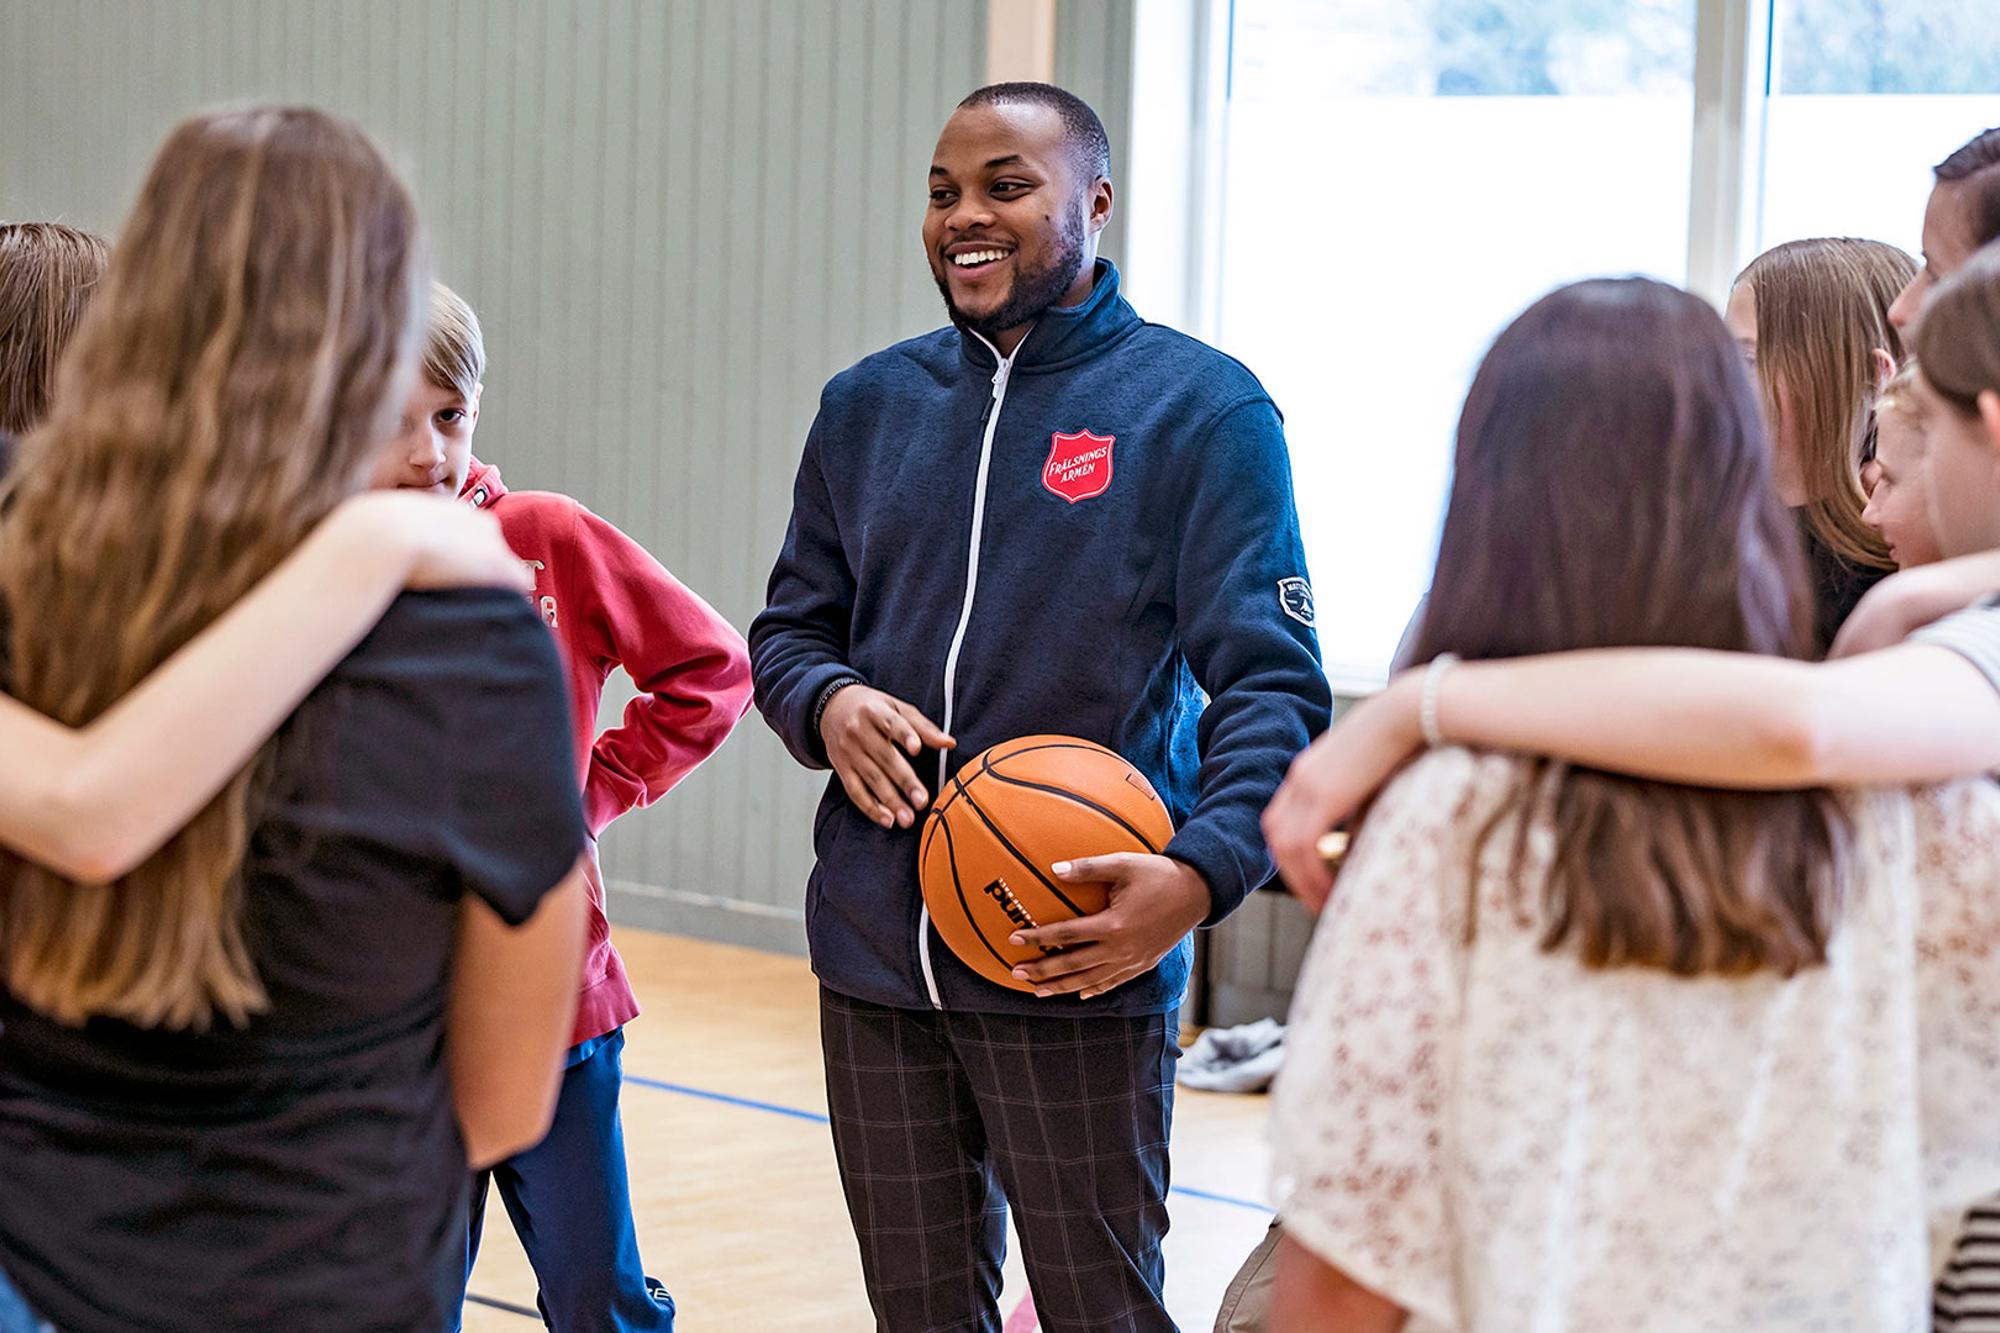 En leende ung man med Frälsningsarméns sköld på tröjan står med en basketboll i händerna i en gymnastiksal. Runt om honom står ungdomar med armarna över varandras axlar.